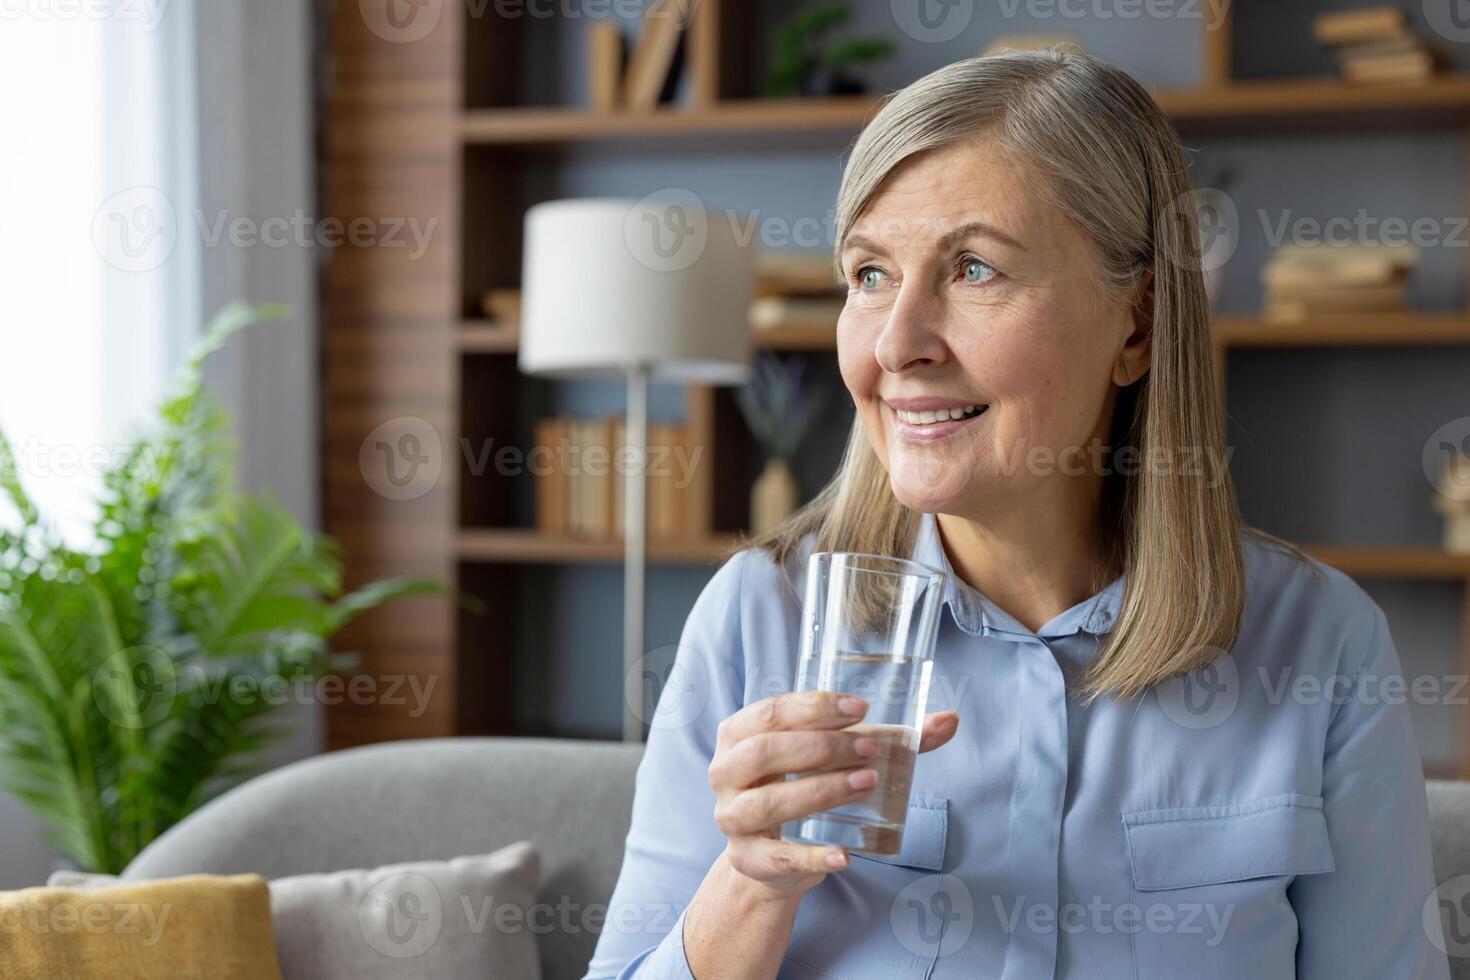 een volwassen vrouw met grijs haar- glimlacht hartelijk terwijl Holding een glas van water, gezeten comfortabel in een goed verlicht leven kamer versierd met planten en boeken. foto